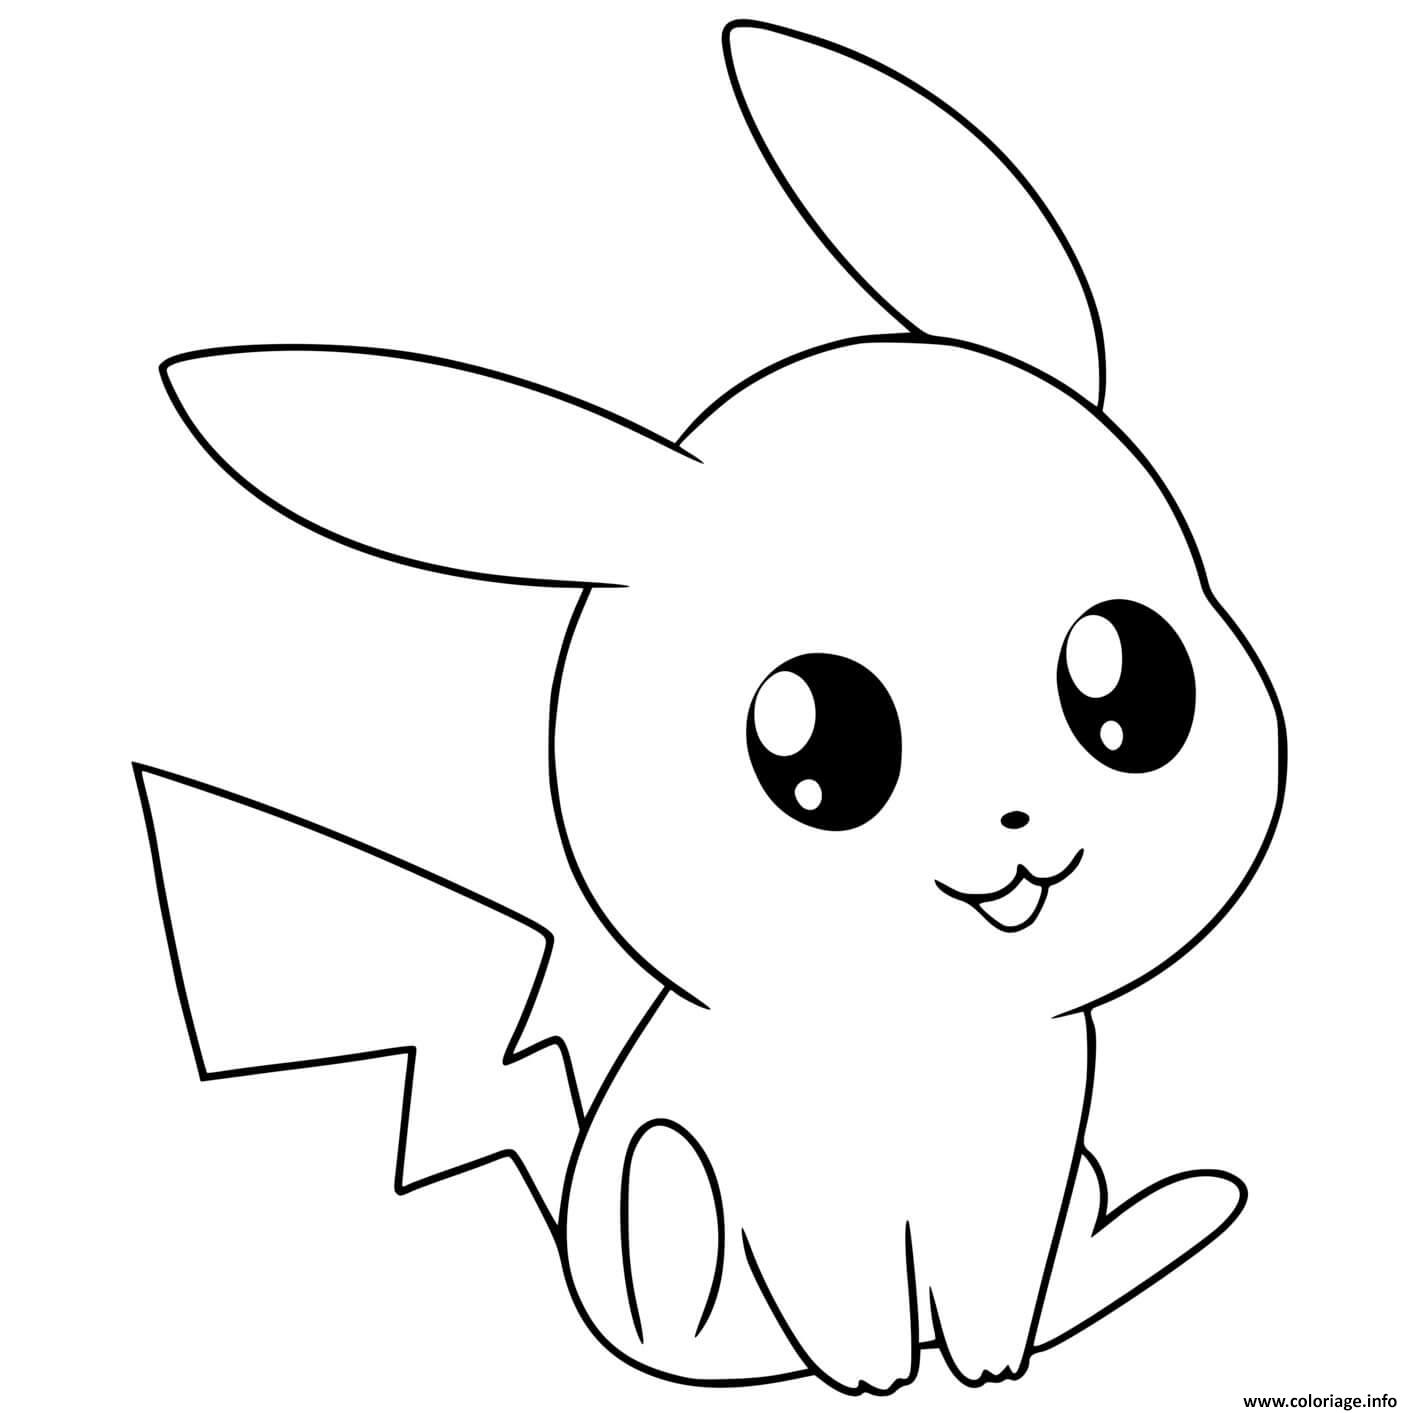 Dessin Cute Chibi Pikachu Pokemon Coloriage Gratuit à Imprimer